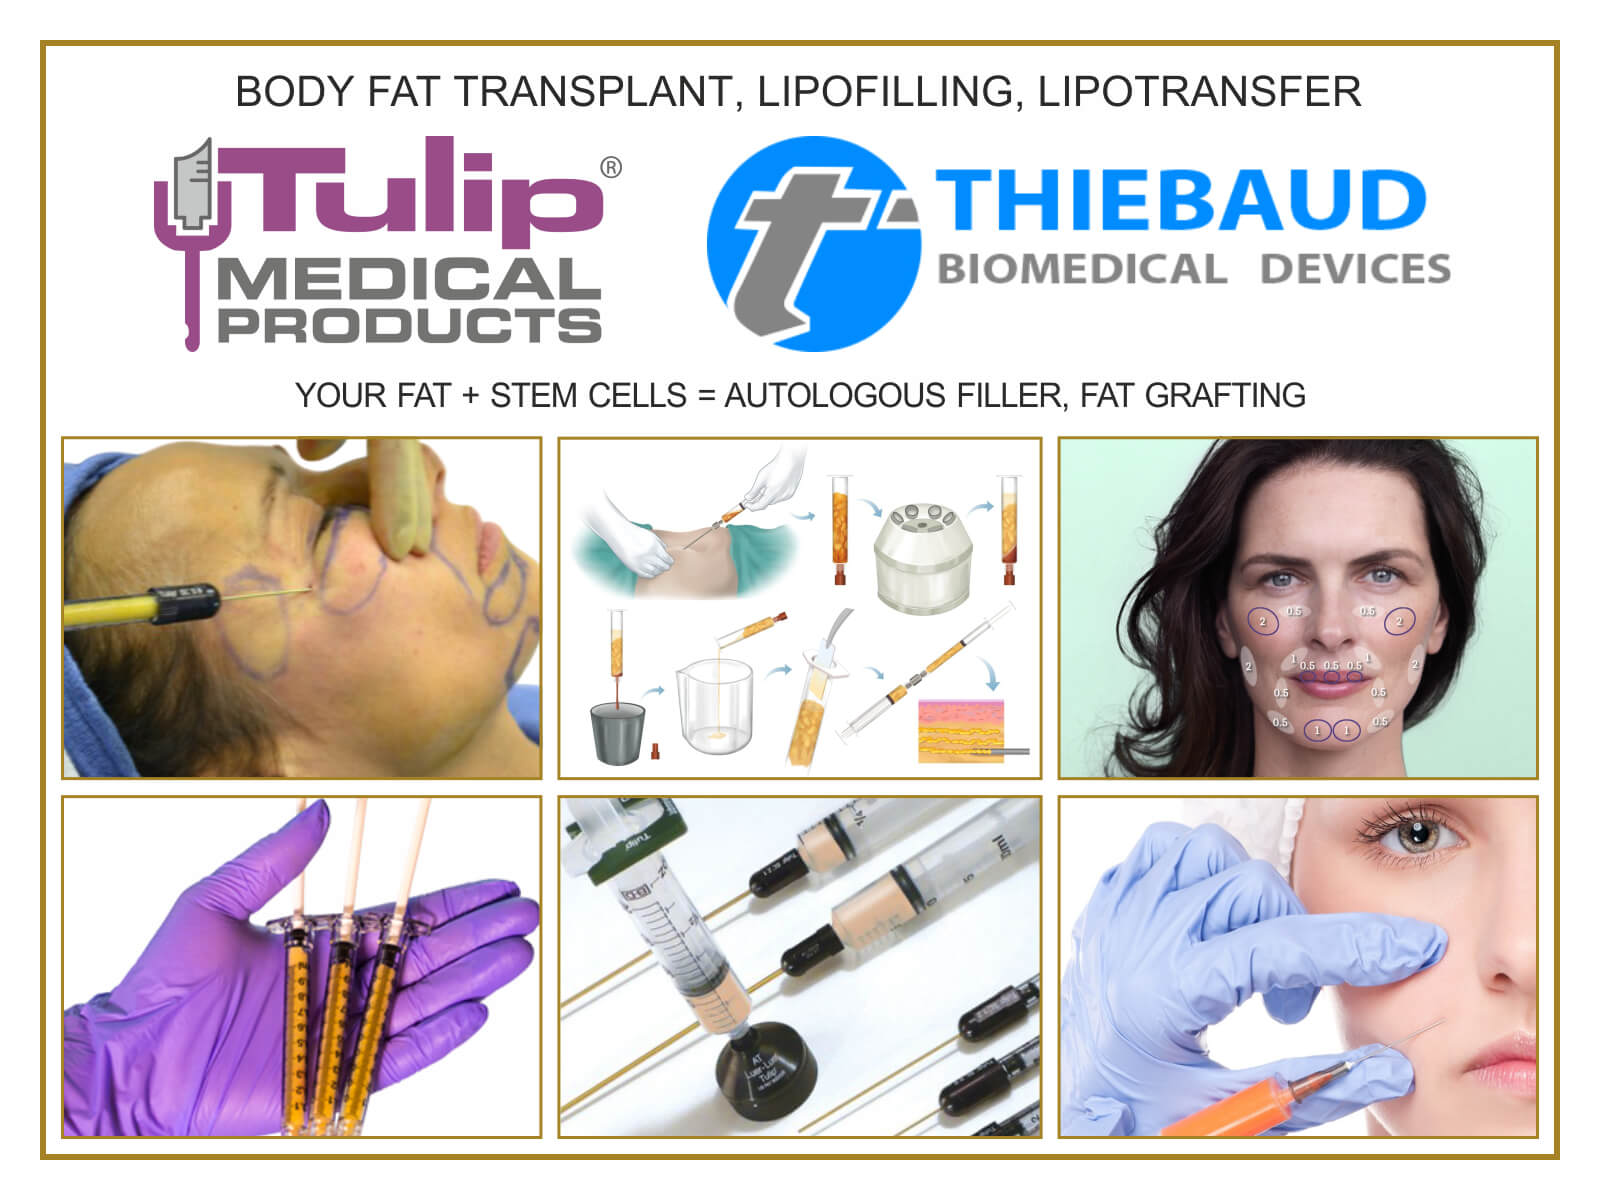 Body Fat Transplant, Lipofilling, Lipotransfer (80x60) EN.jpg